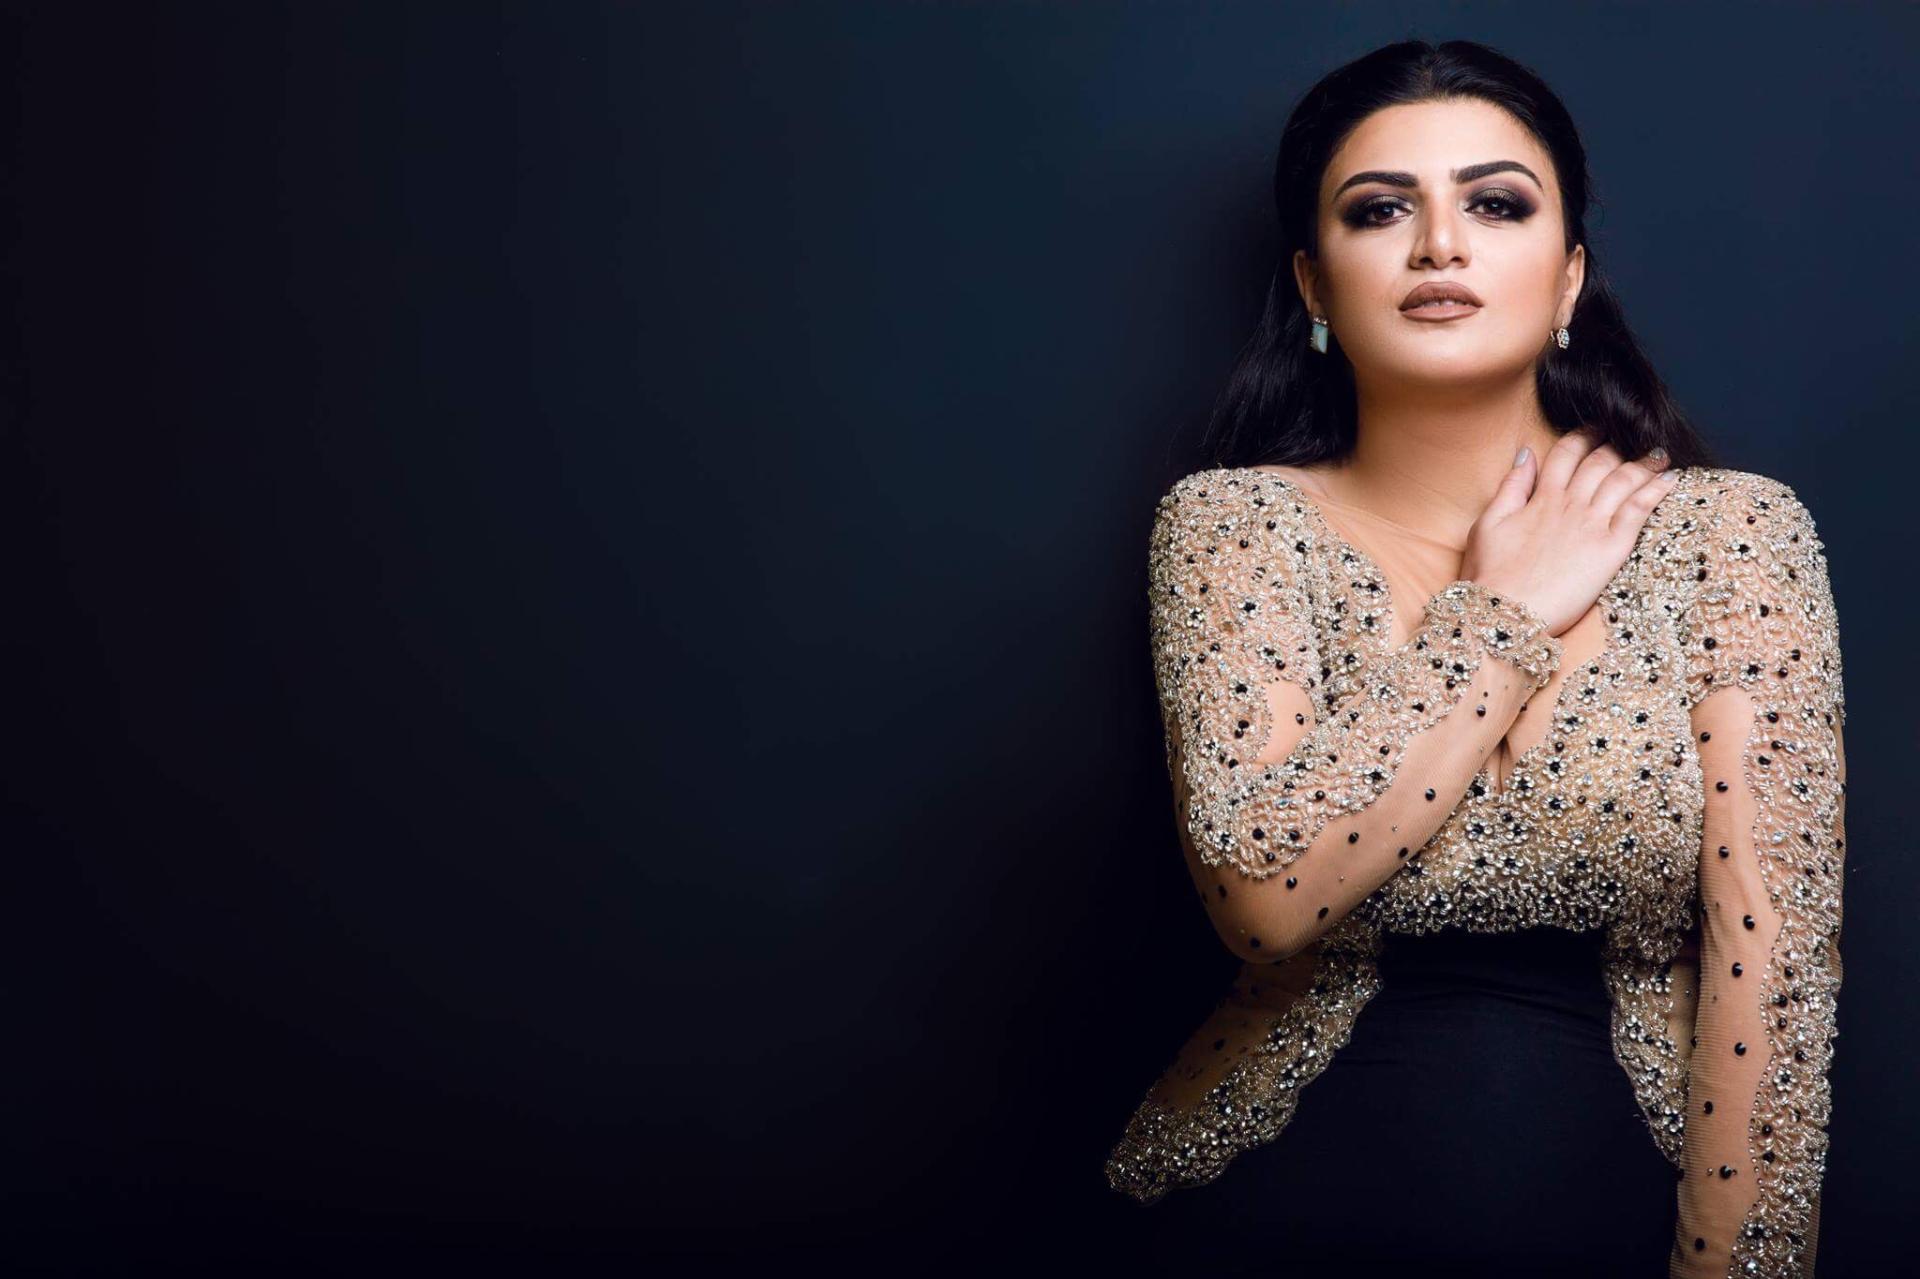 Певица из Турции проведет в Баку конкурс среди супермам (ФОТО, АУДИО)